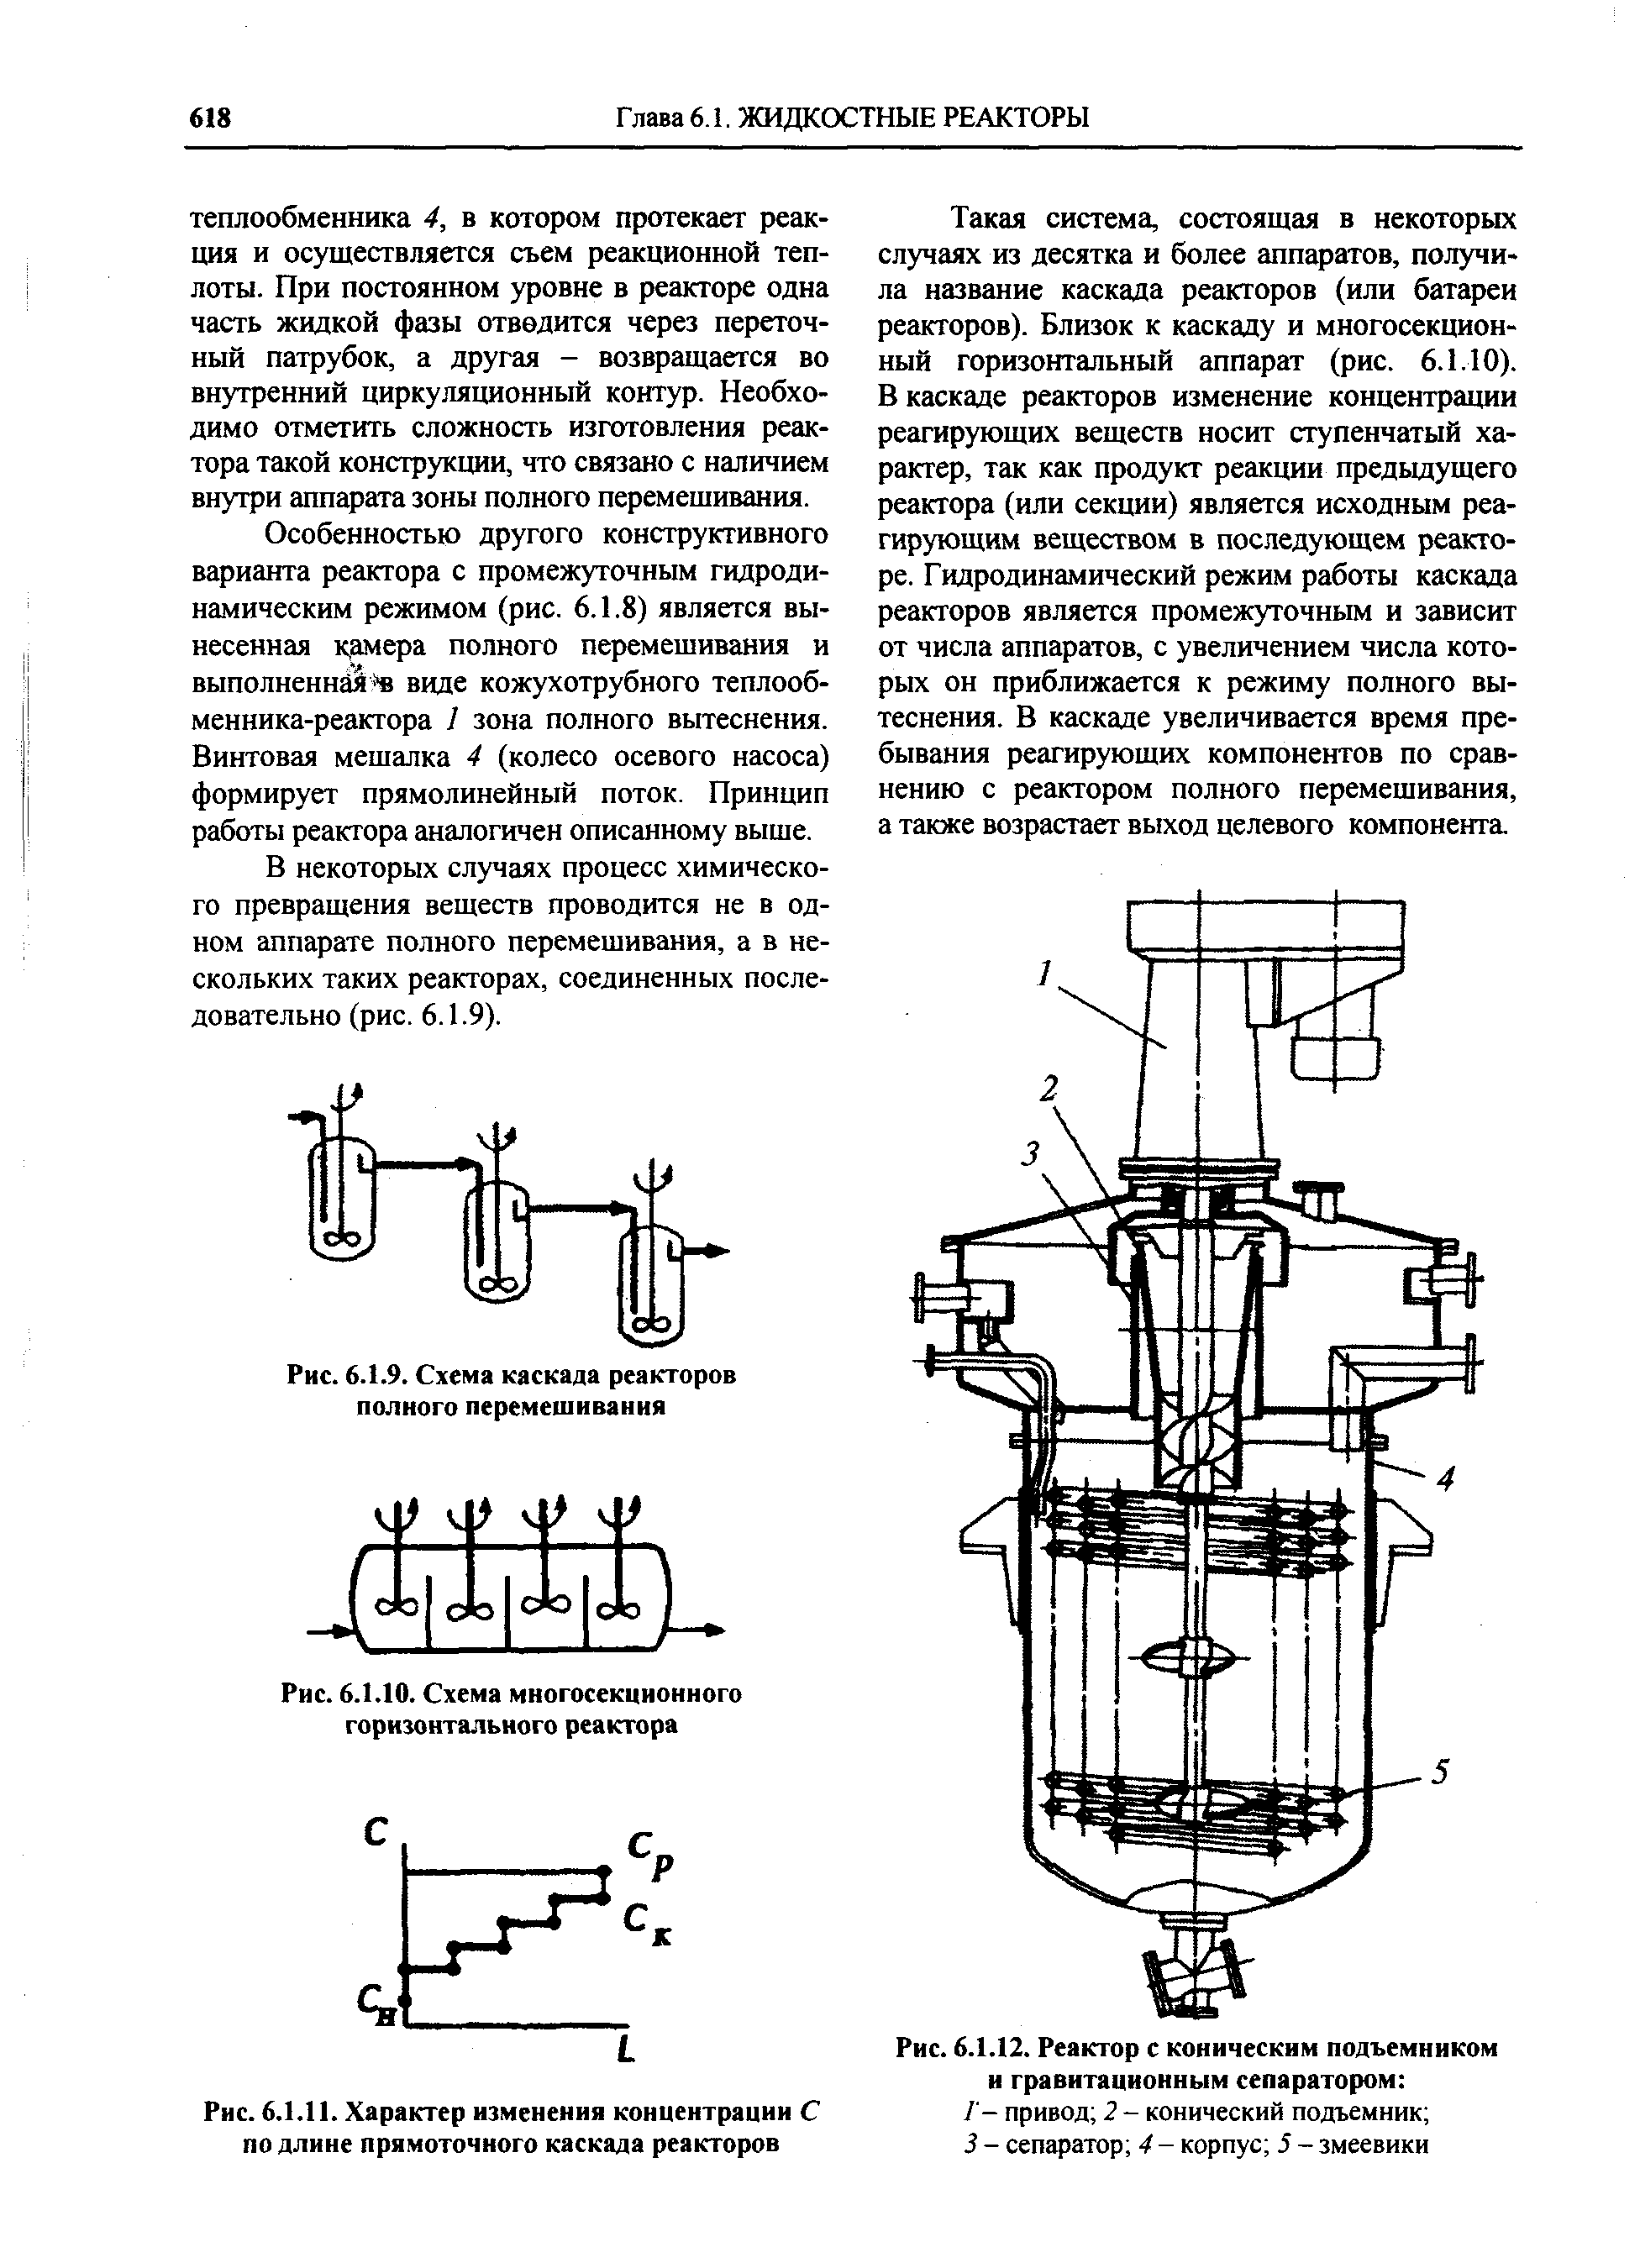 Рис. 6.1.12. Реактор с коническим подъемником и гравитационным сепаратором 
